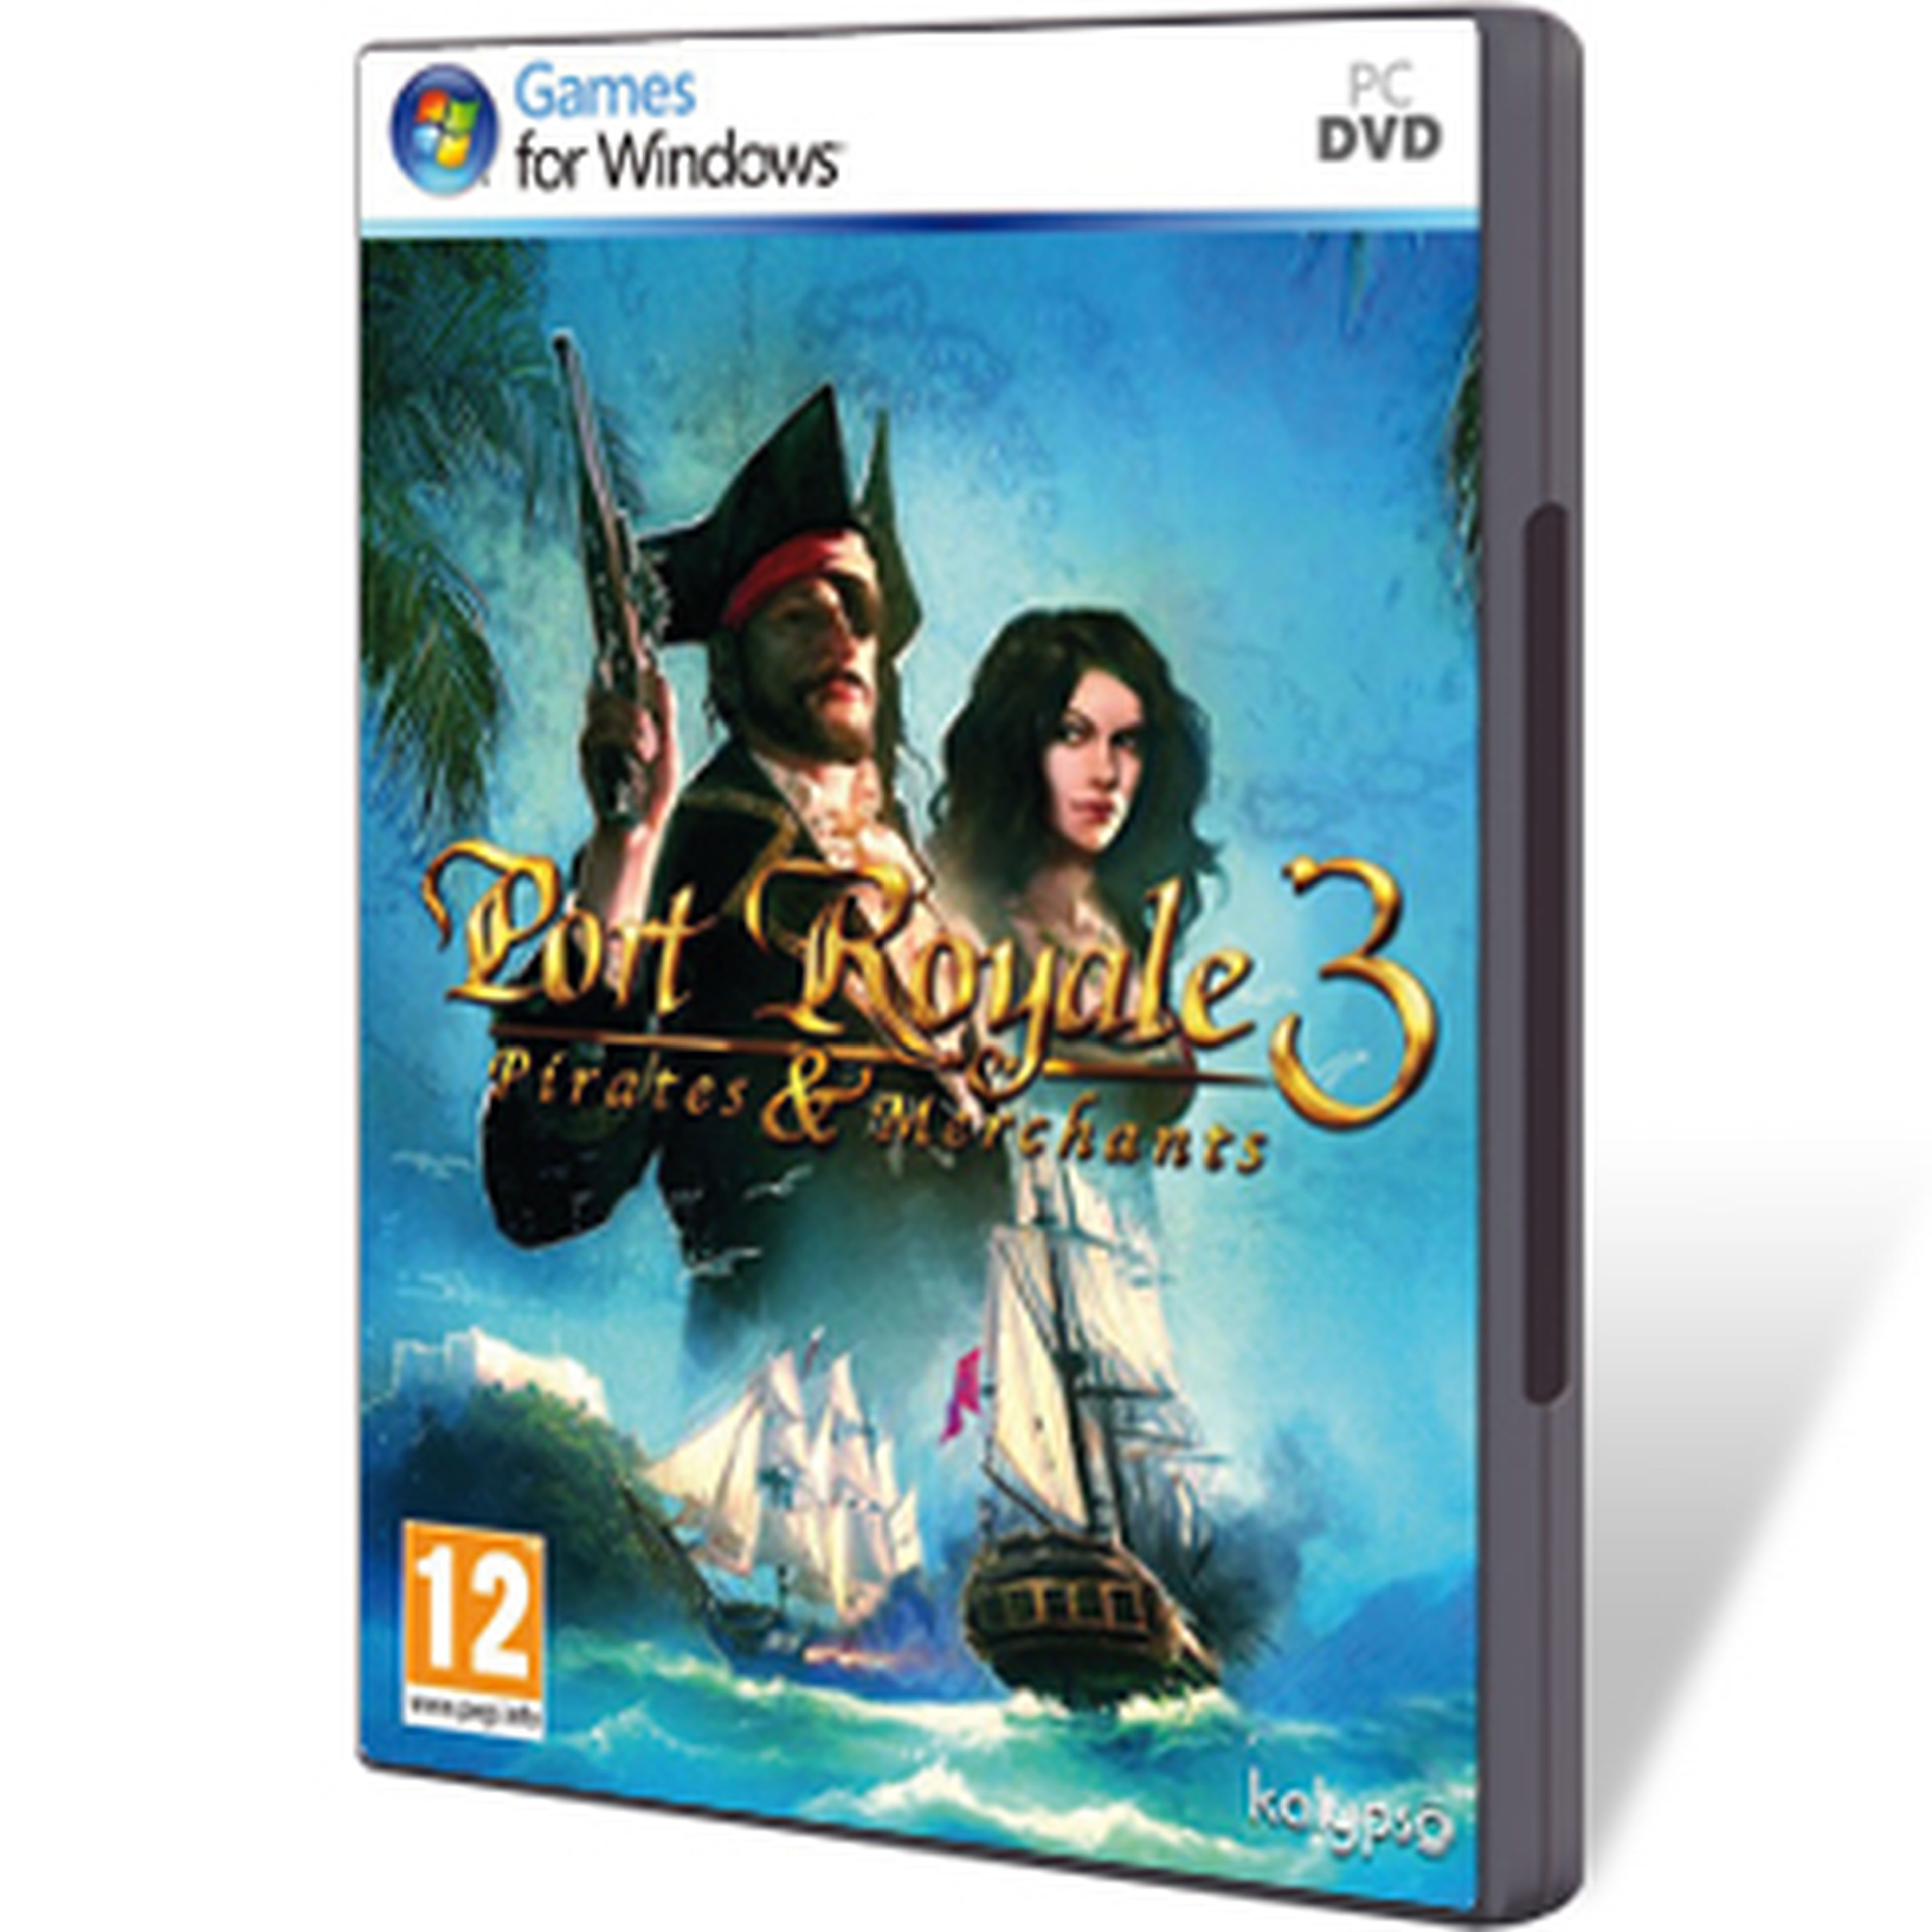 Port Royale 3 para PC